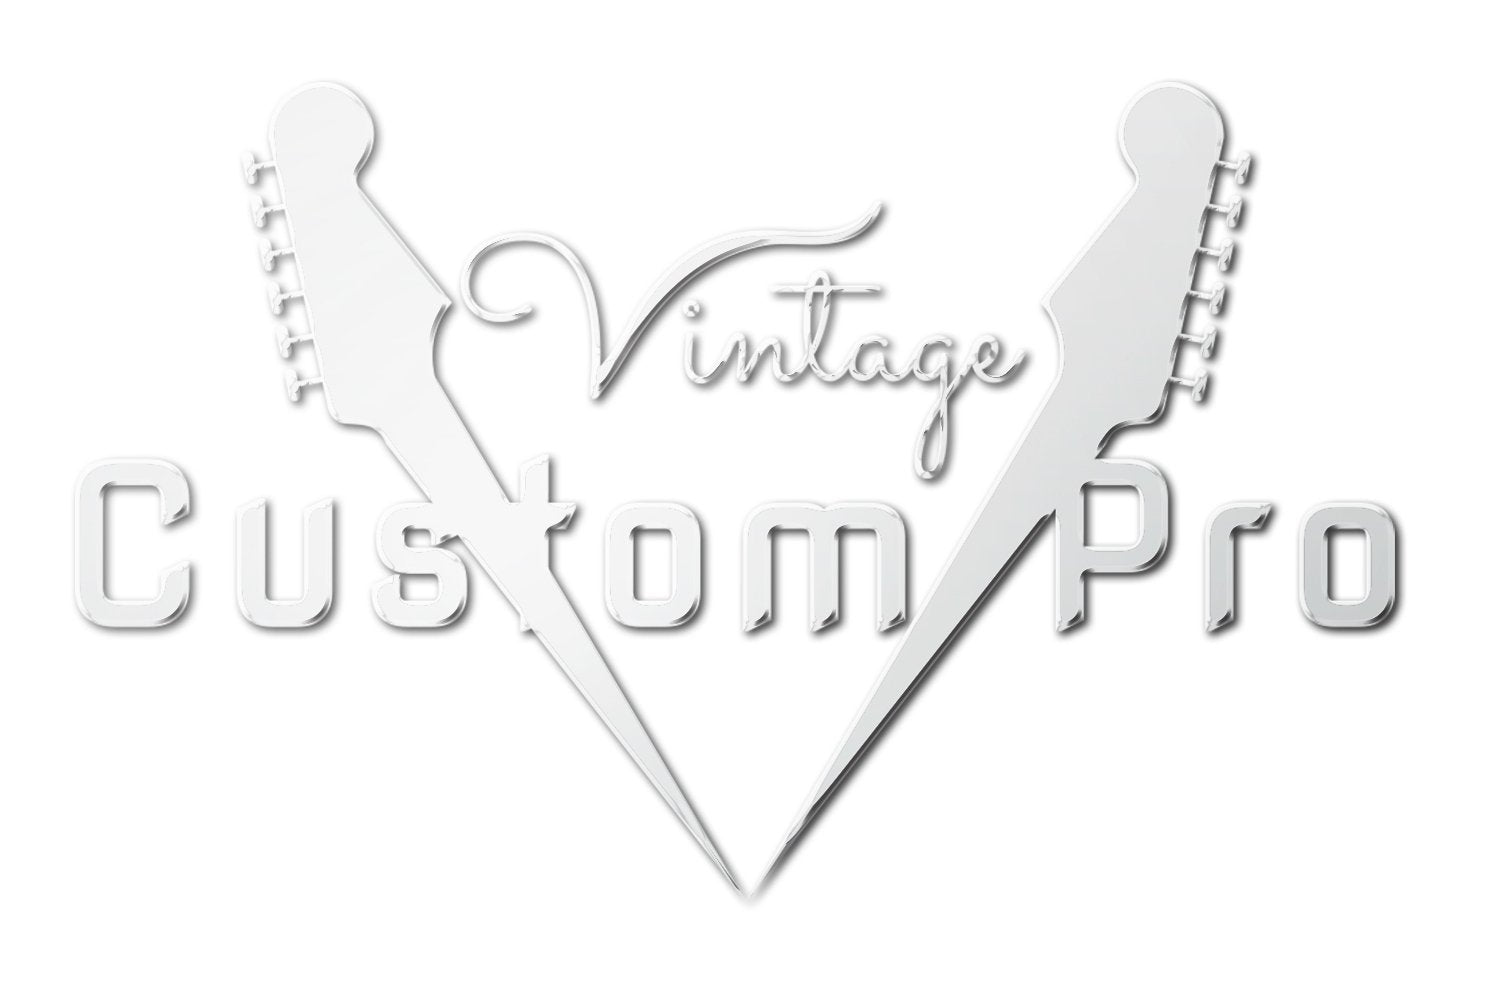 Vintage* V6MRLB Electric Guitar, Electric Guitar for sale at Richards Guitars.